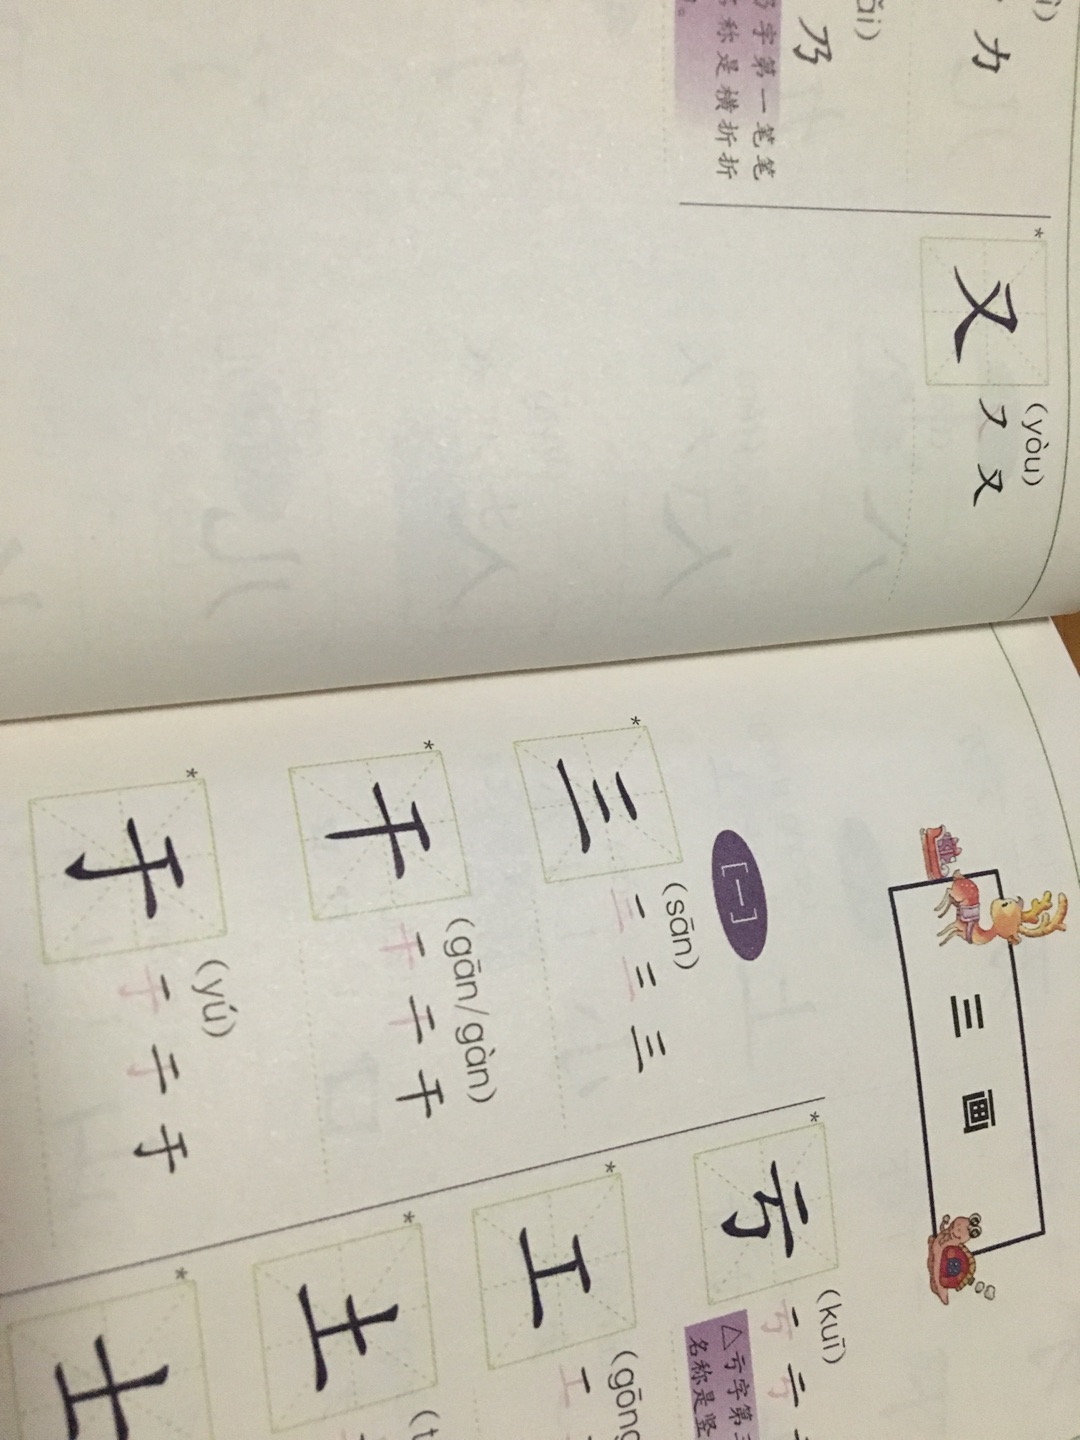 幼小阶段都非常适合的工具书，特别写字初期，可以用来纠正汉字笔画，规范汉字笔顺。个人觉得美中不足的是没有拼音，所以对于幼小的孩子来说独立使用还是有难度的。